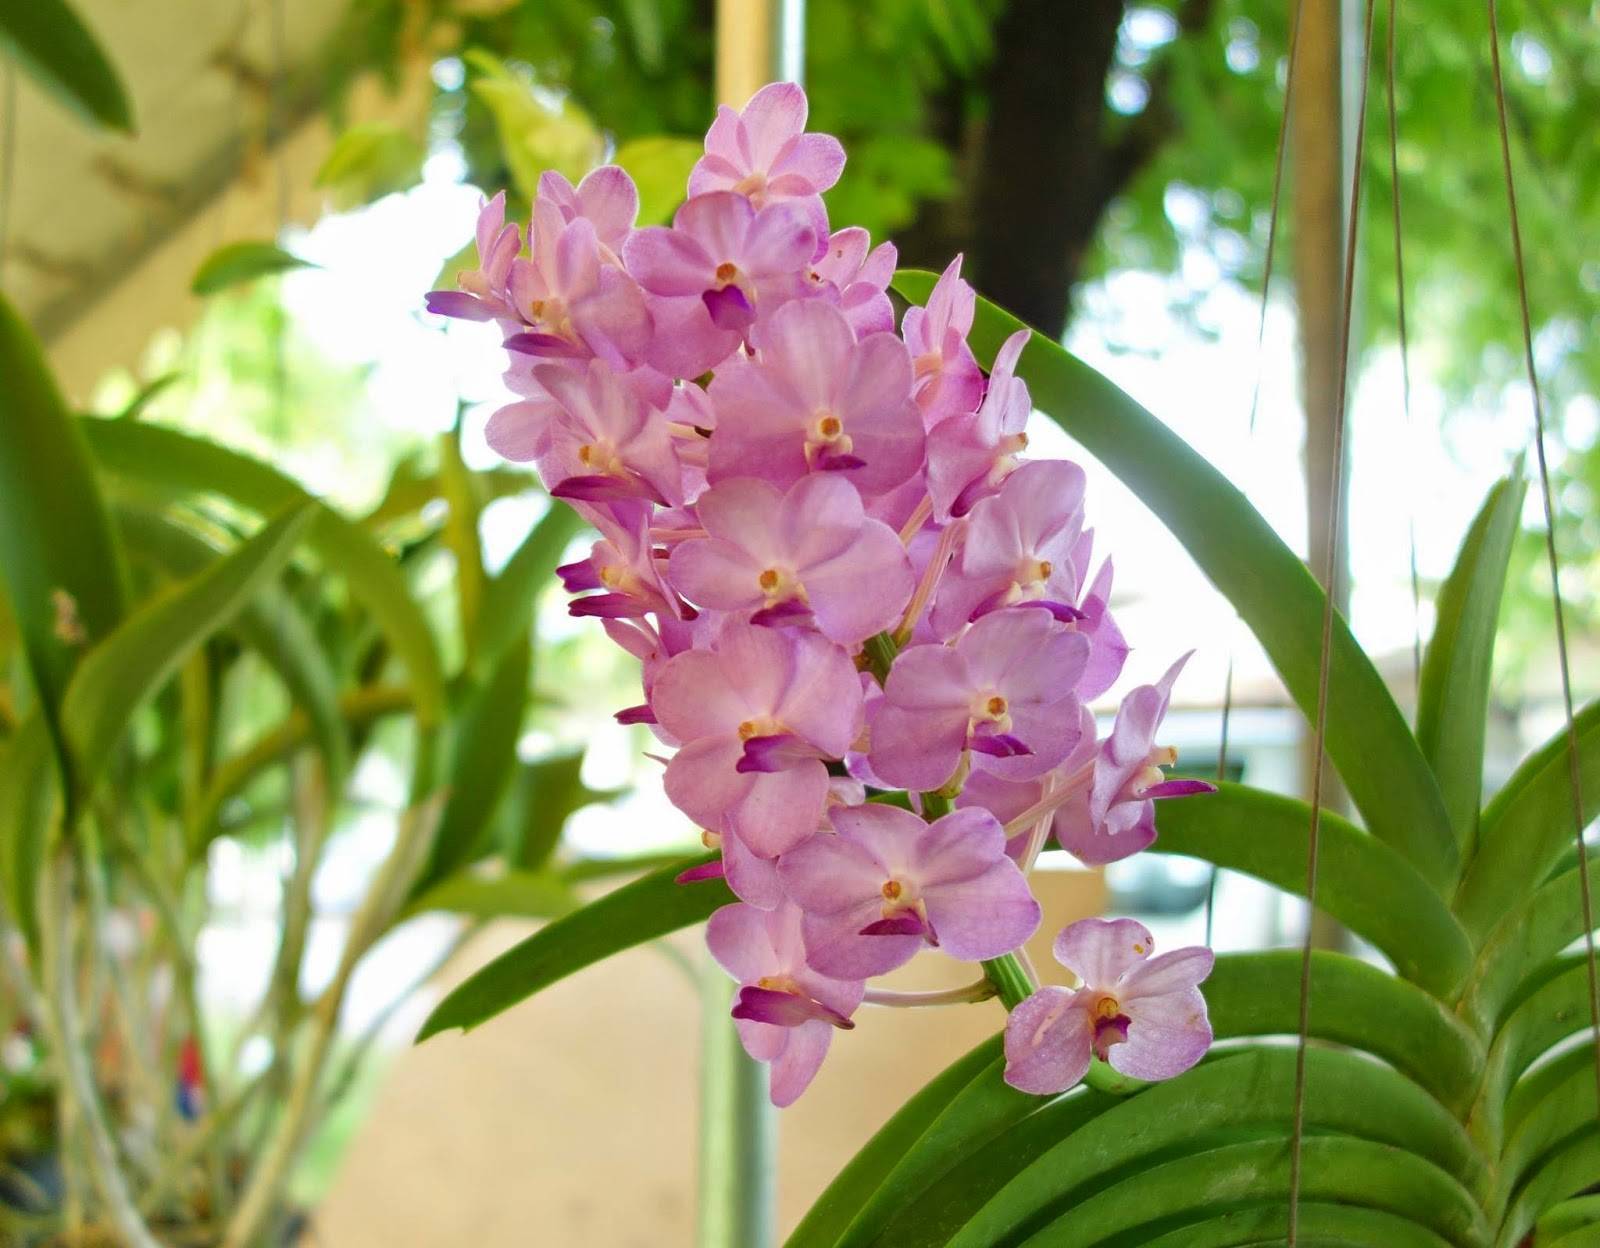 Посадка и уход за орхидеей в домашних условиях: как не совершить ошибку?